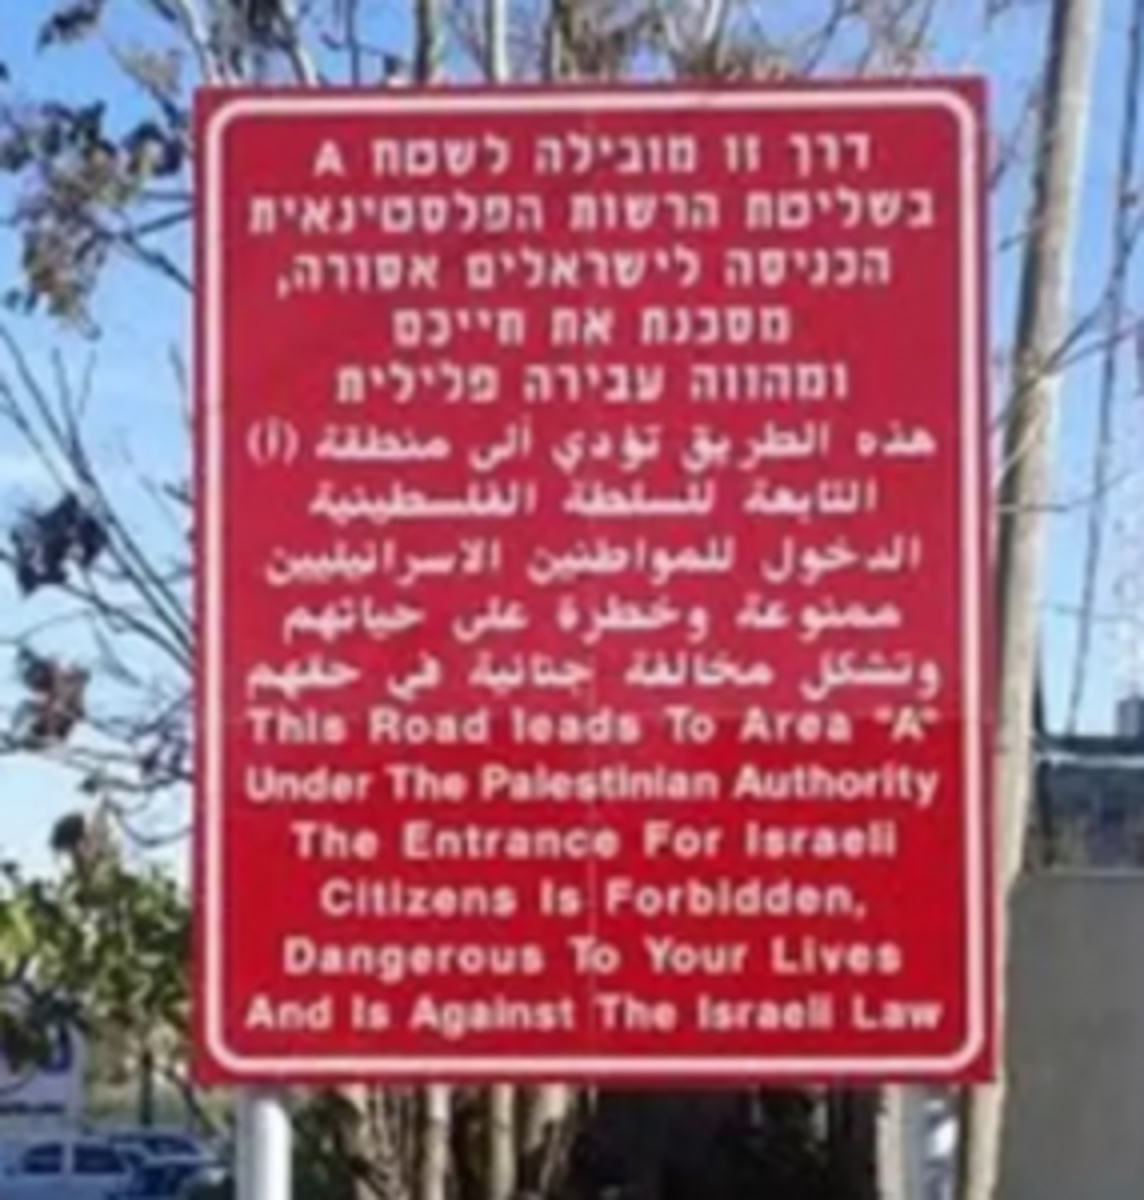  Sign entering Area A, Israeli Citizens Forbidden.